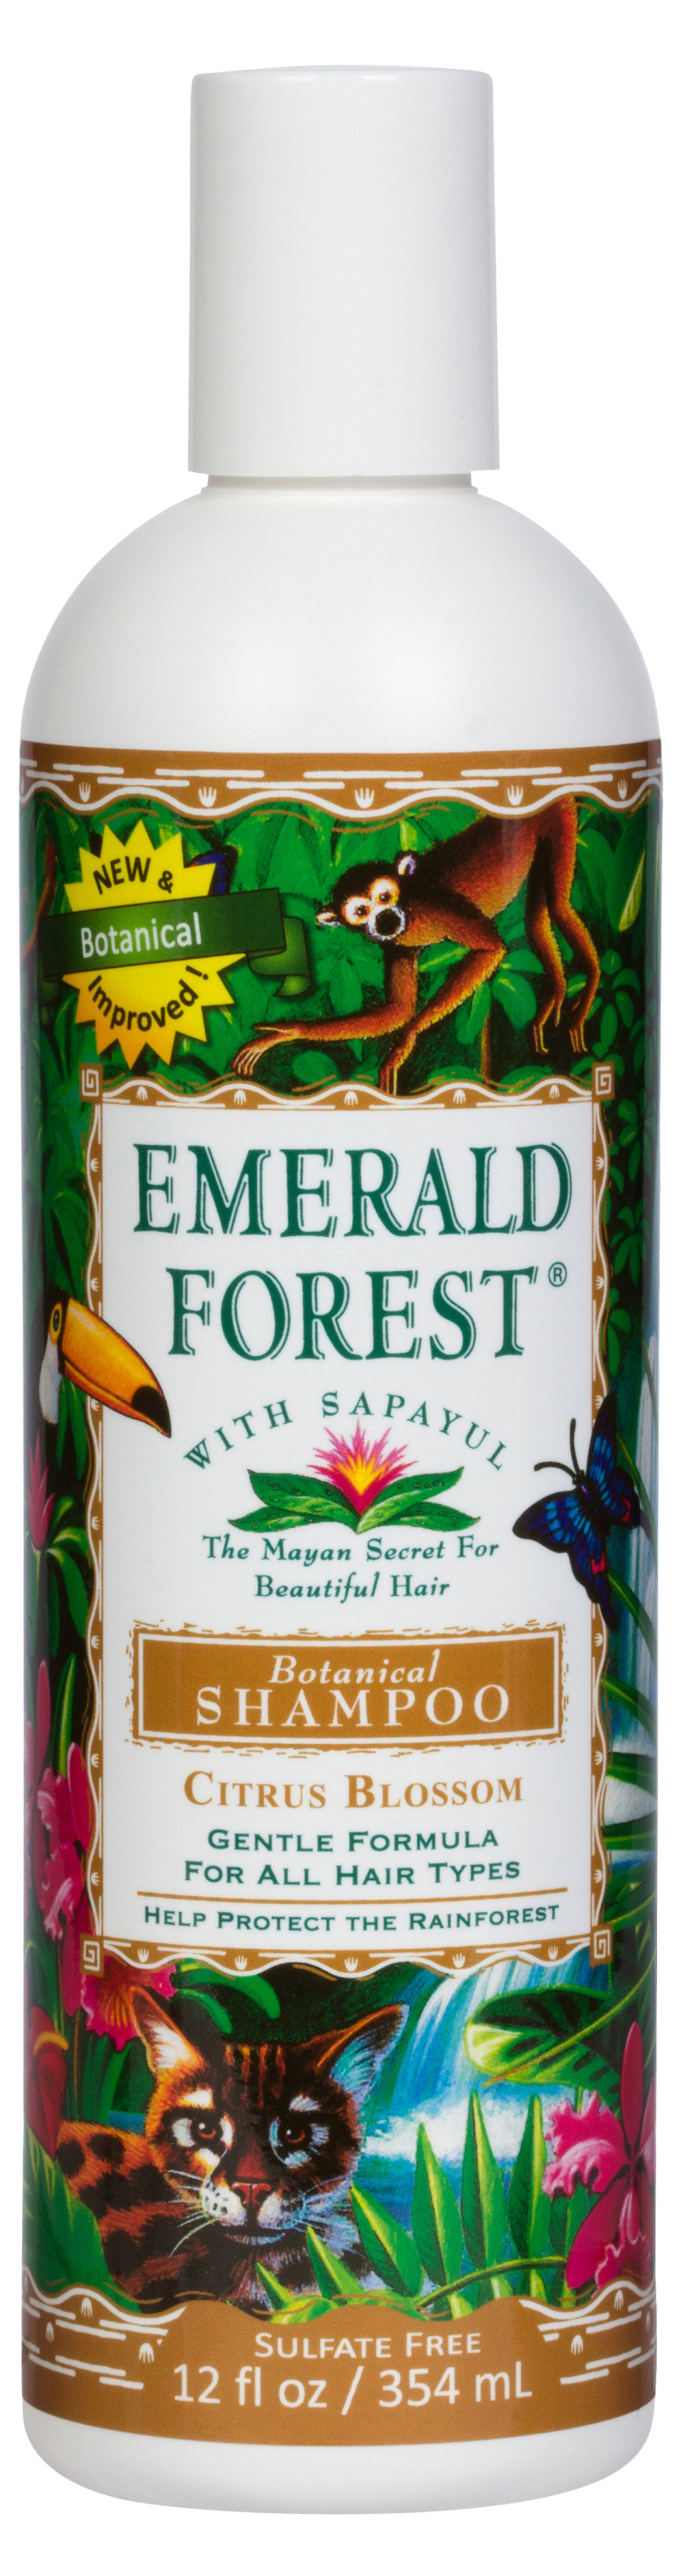 Emerald Forest Botanical Shampoo